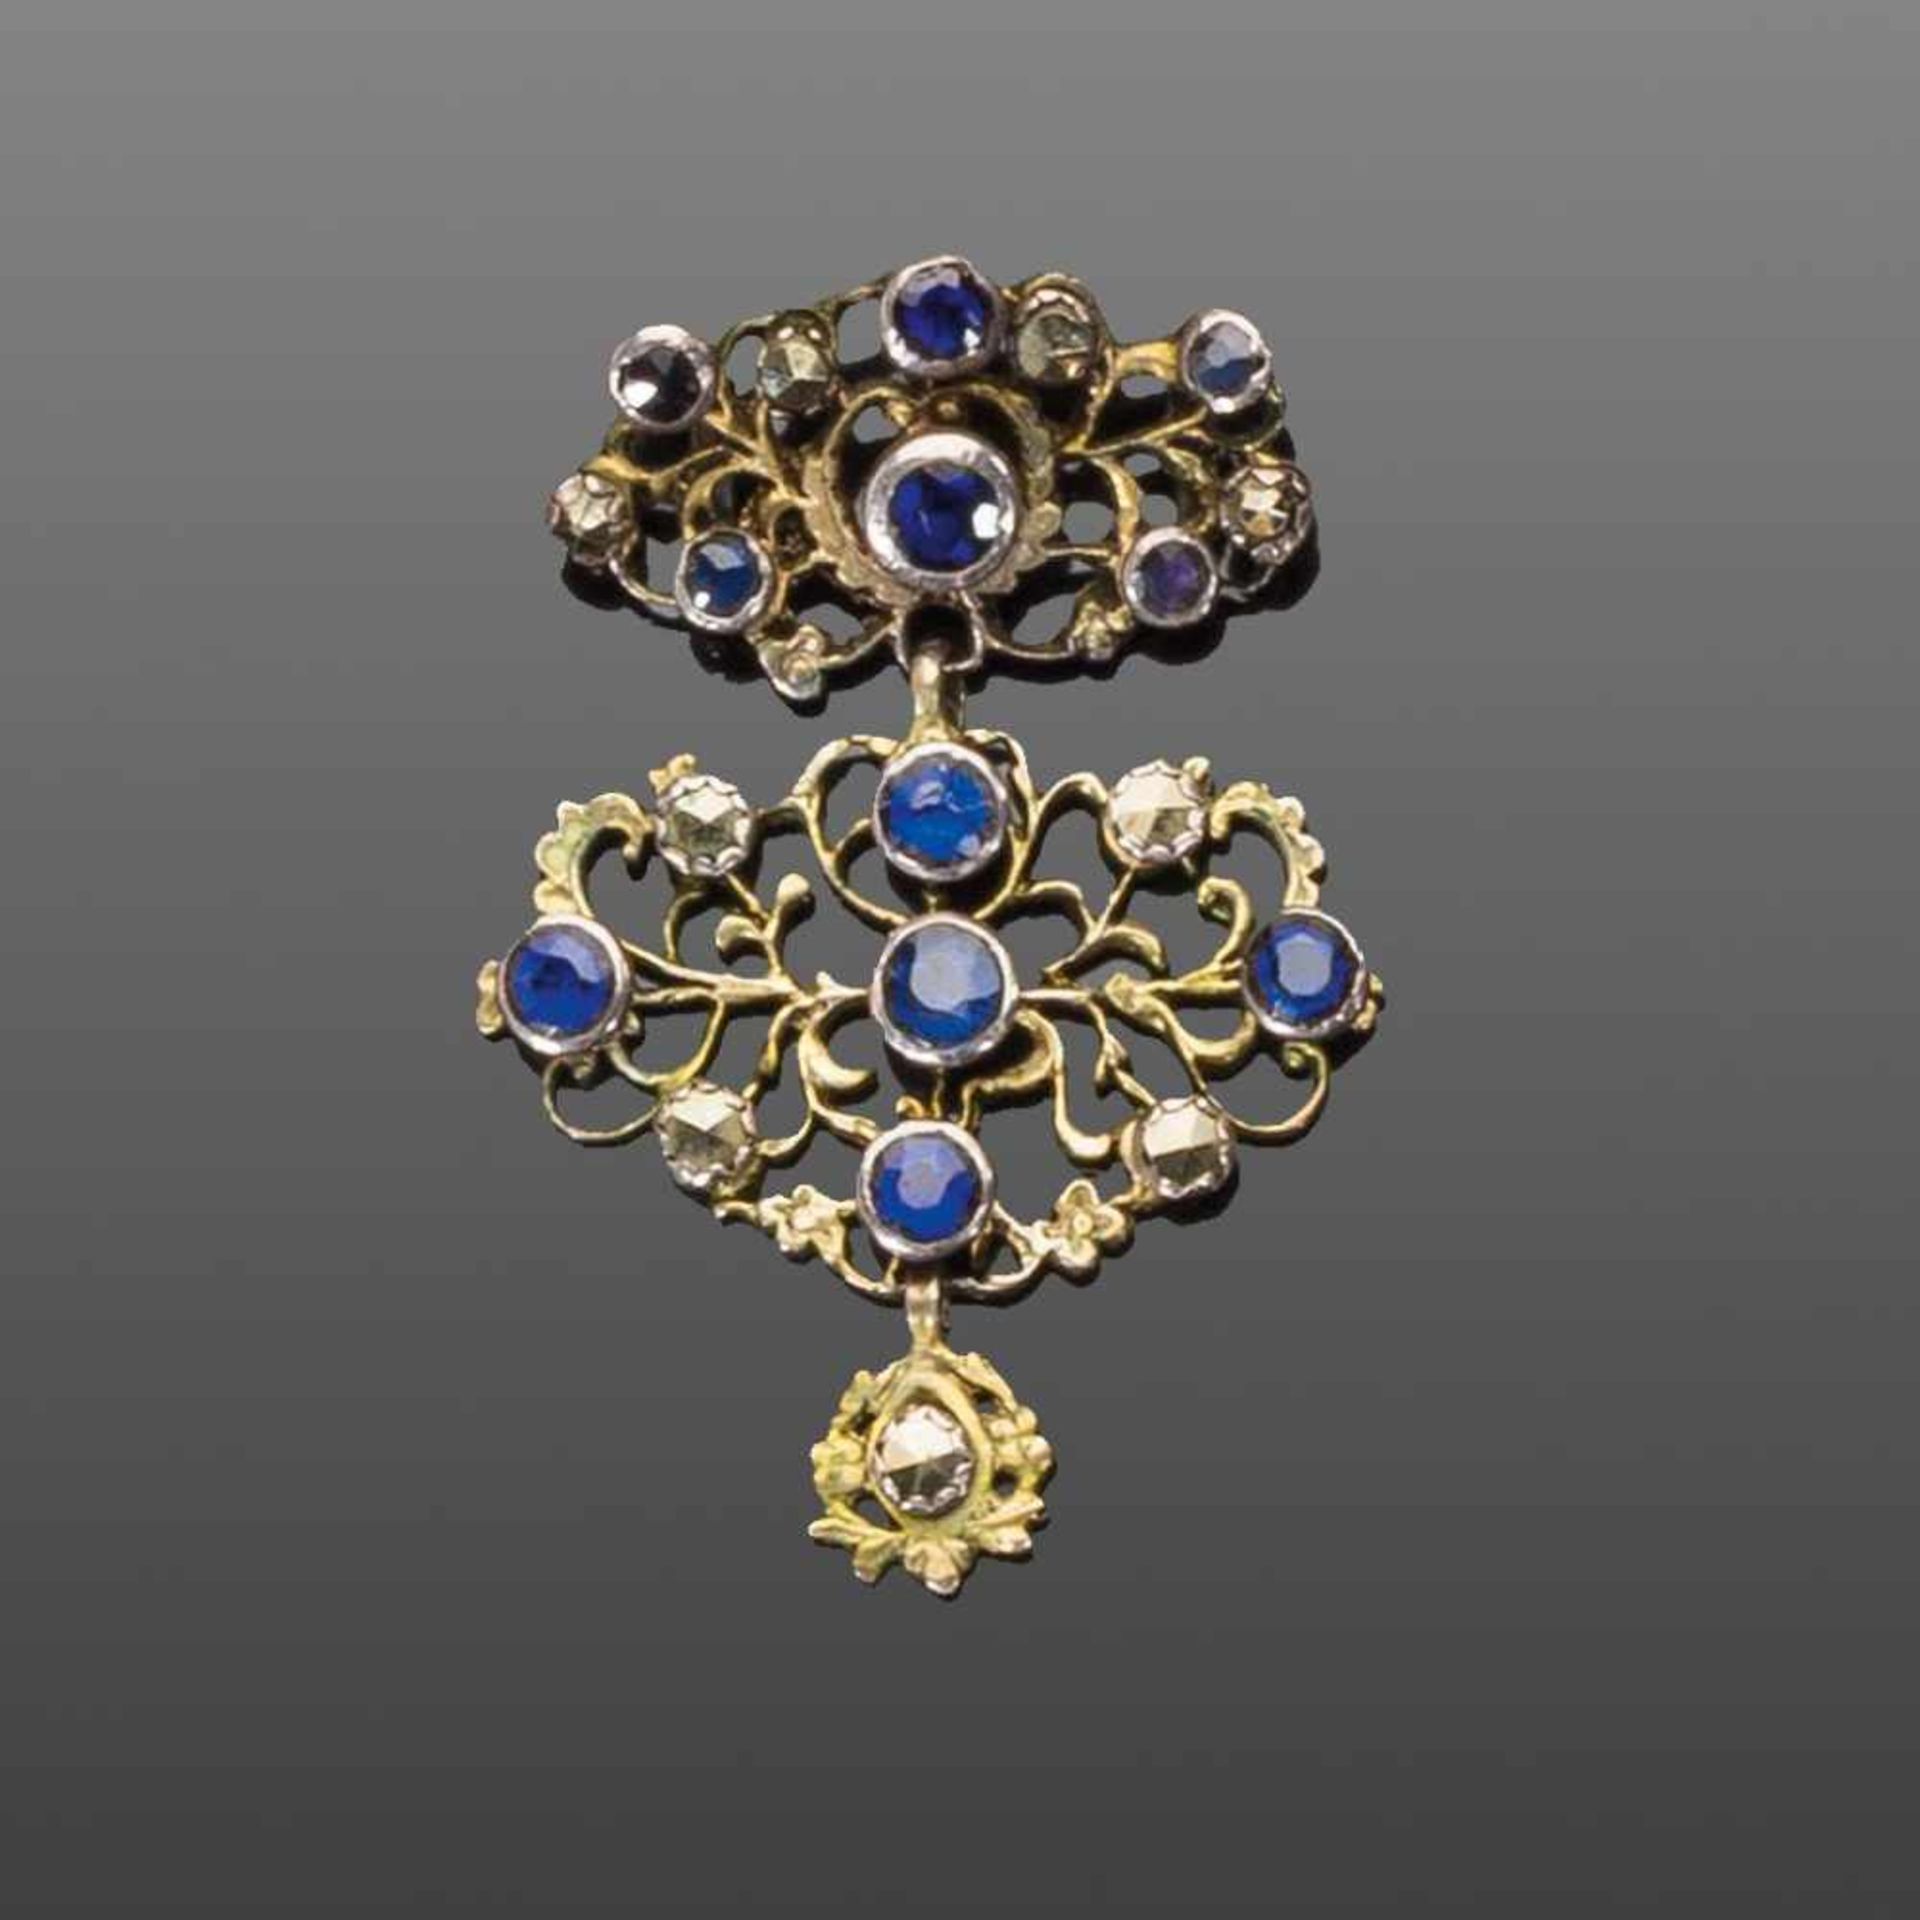 Bregenzer Trachtenanhänger. Silber mit Markasiten und blauen Kristallen. 19. Jh. H 5 cm